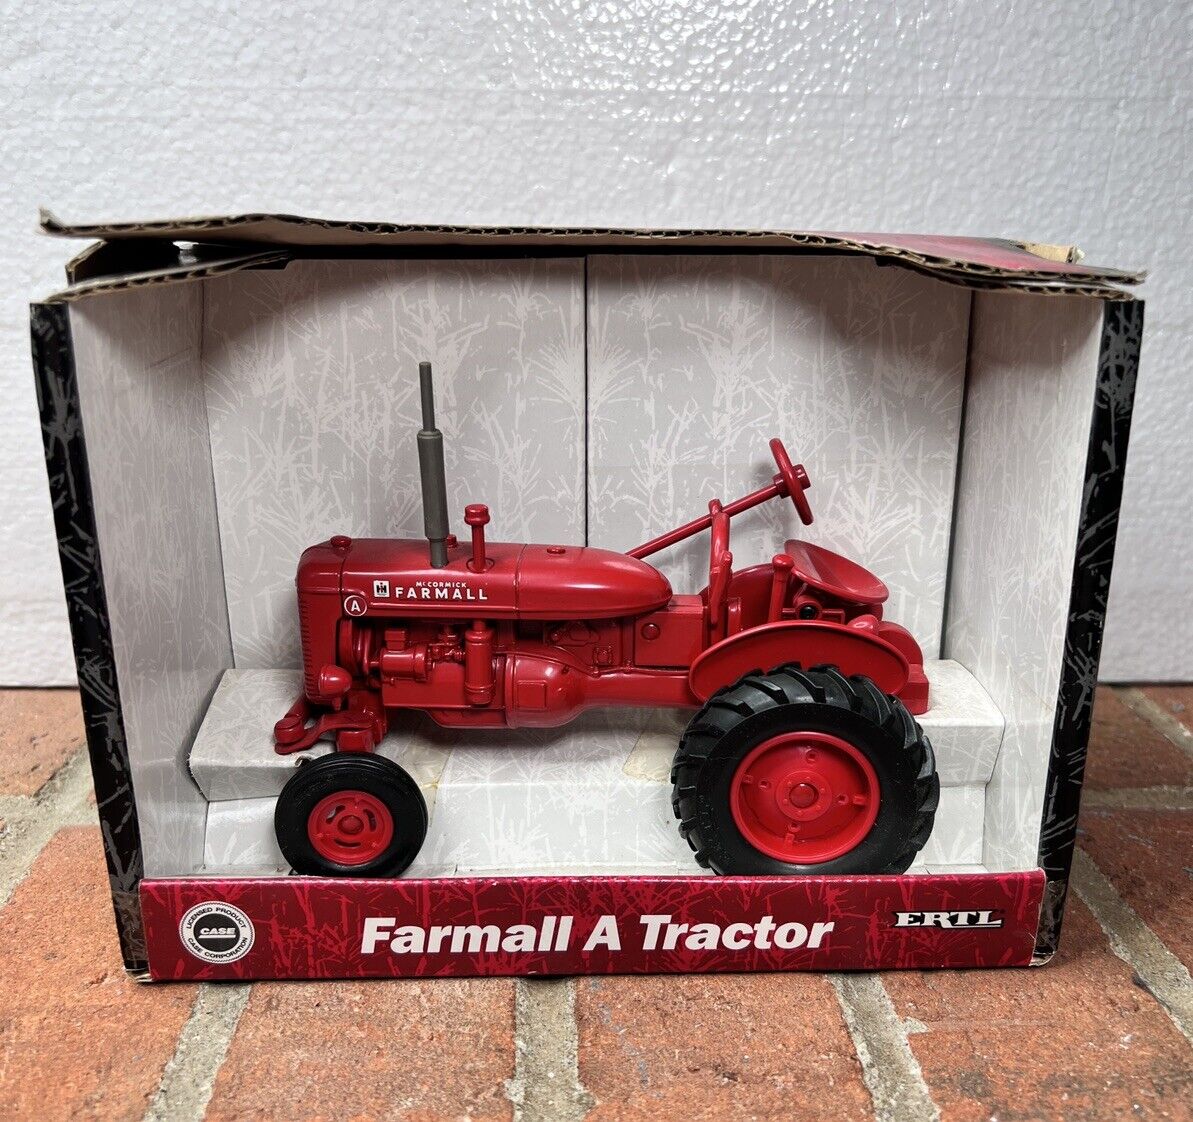 Farmall Model A Tractor Ertl 1/16 Scale Case NIB 2001 IH Vintage Antique Farming